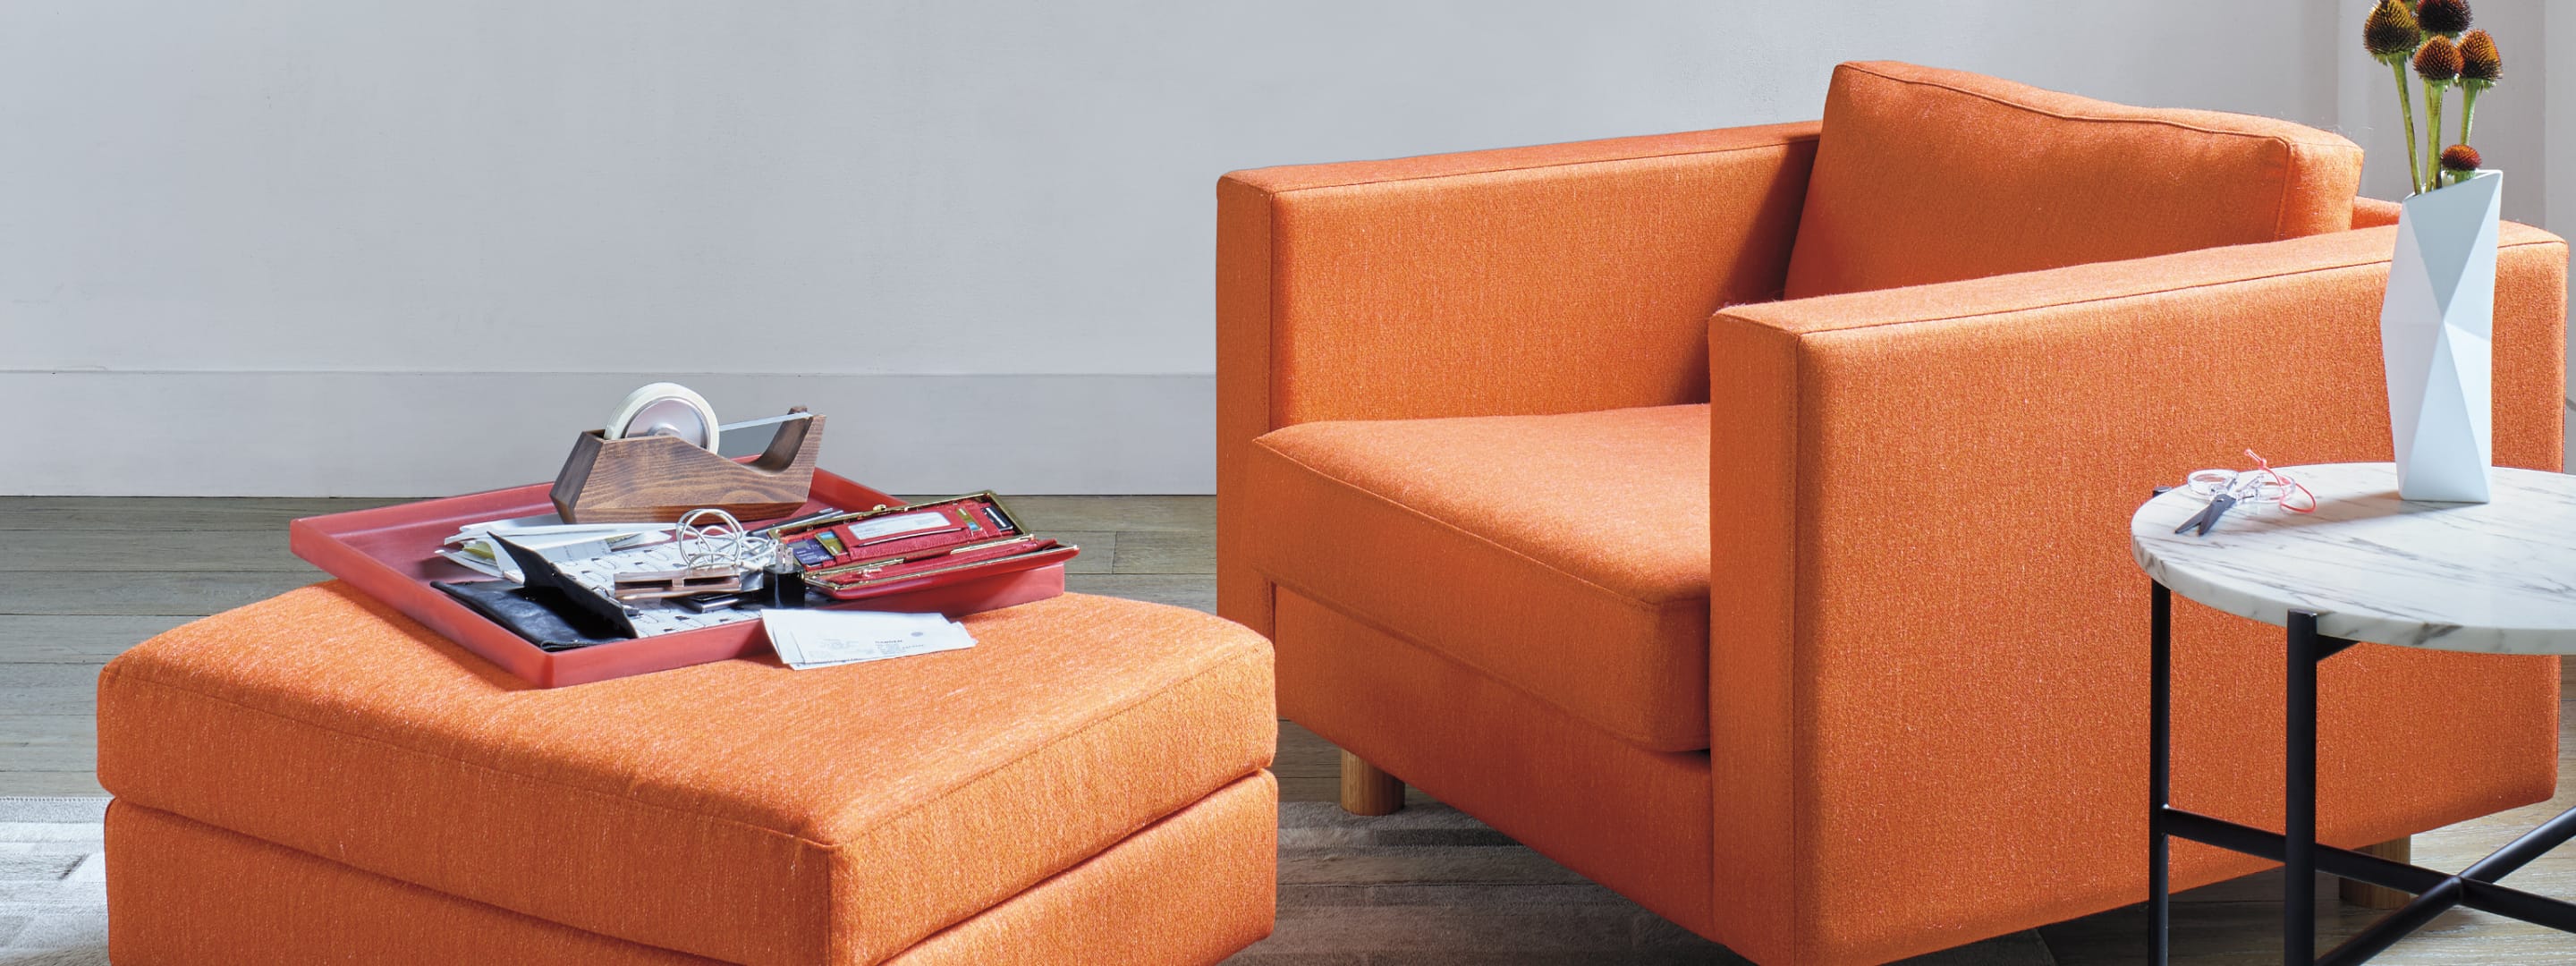 Een kleurrijke Lispenard-loungestoel en ottomane in een woonkamer.